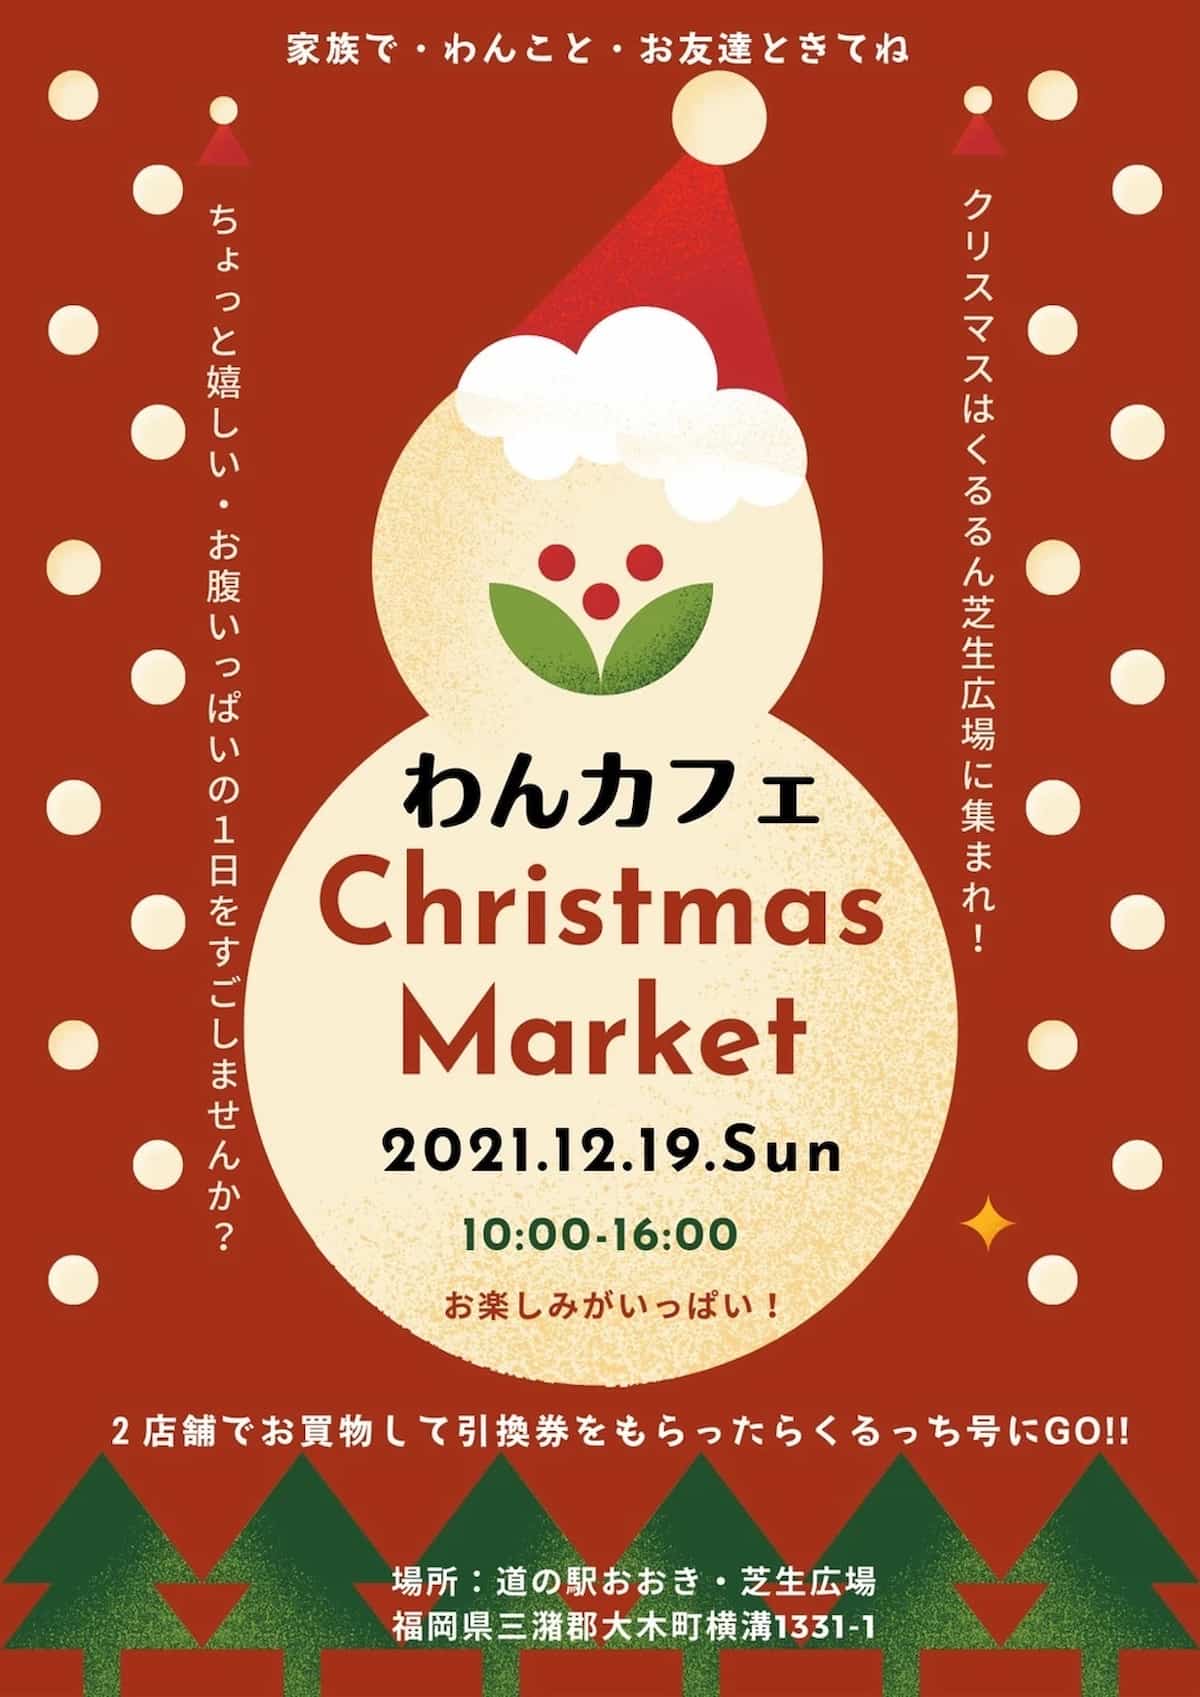 わんカフェ・Christmas Marketってイベントが開催されるみたい。12月19日